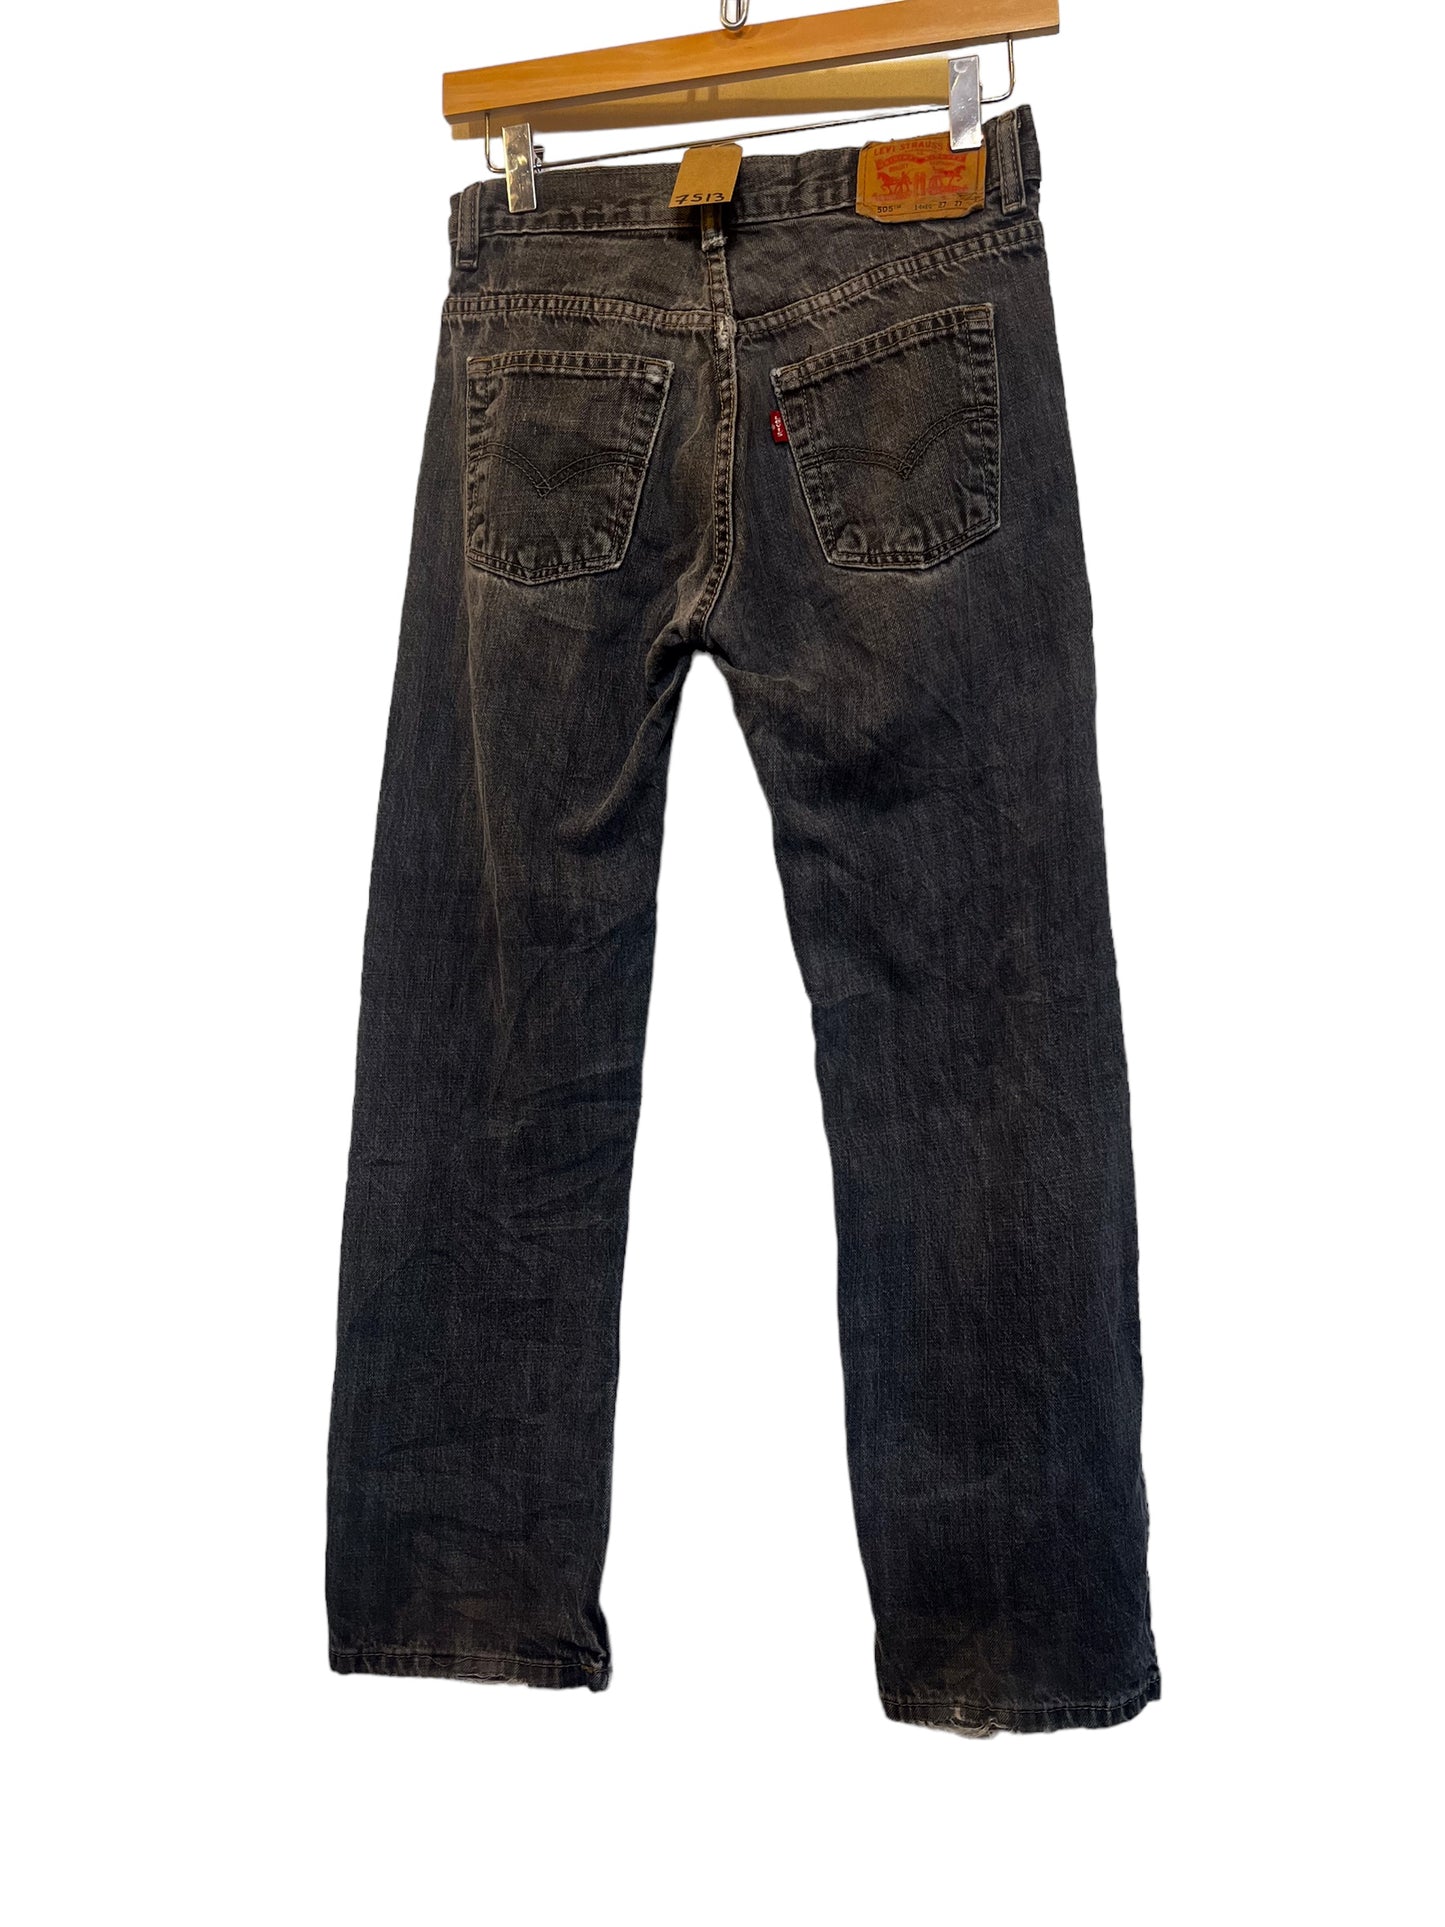 Levi 505 jeans (27x27)